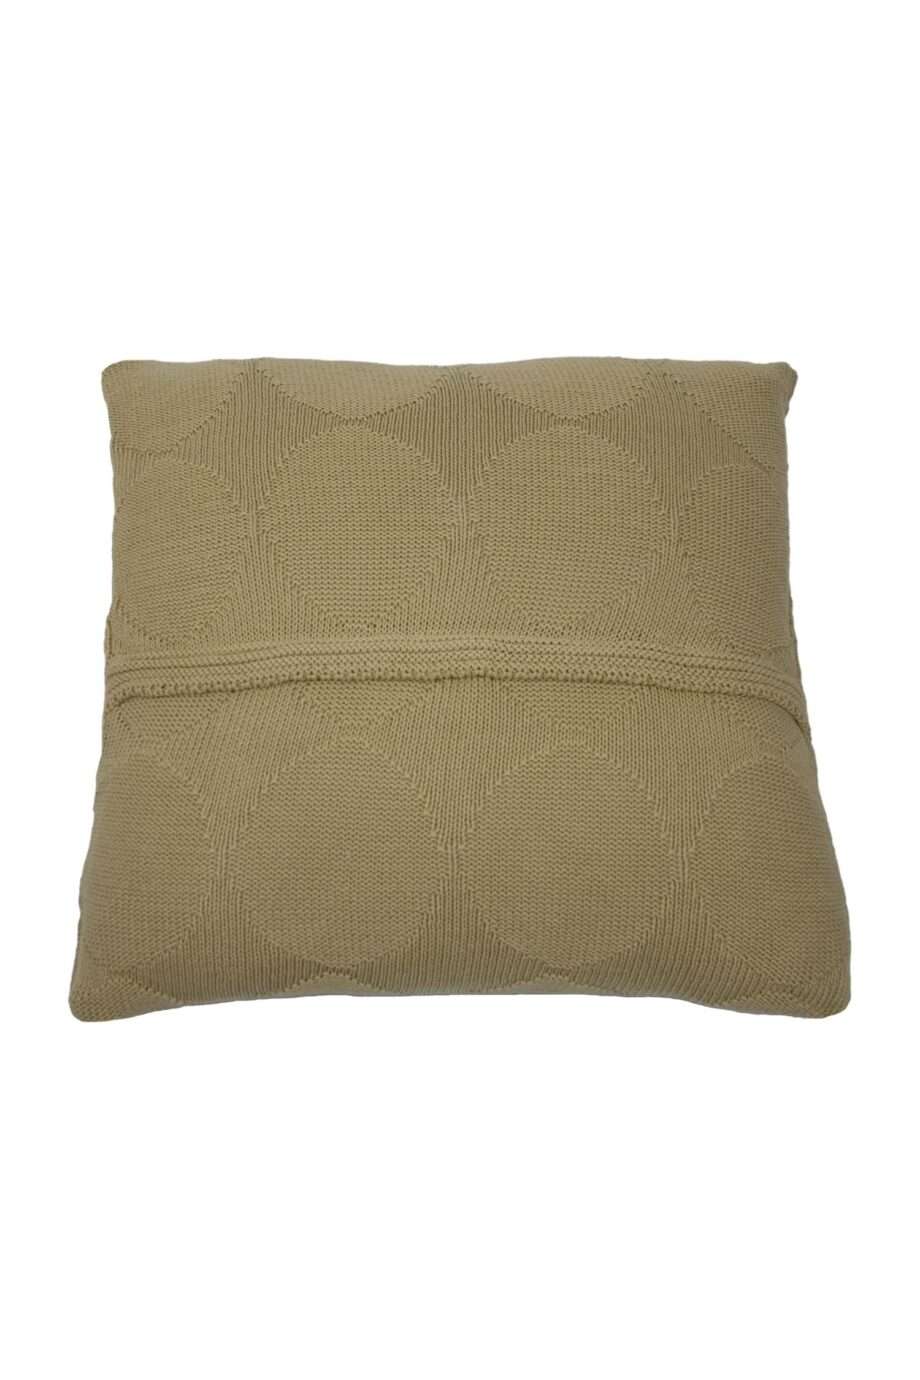 spots ochre knitted cotton pillowcase medium